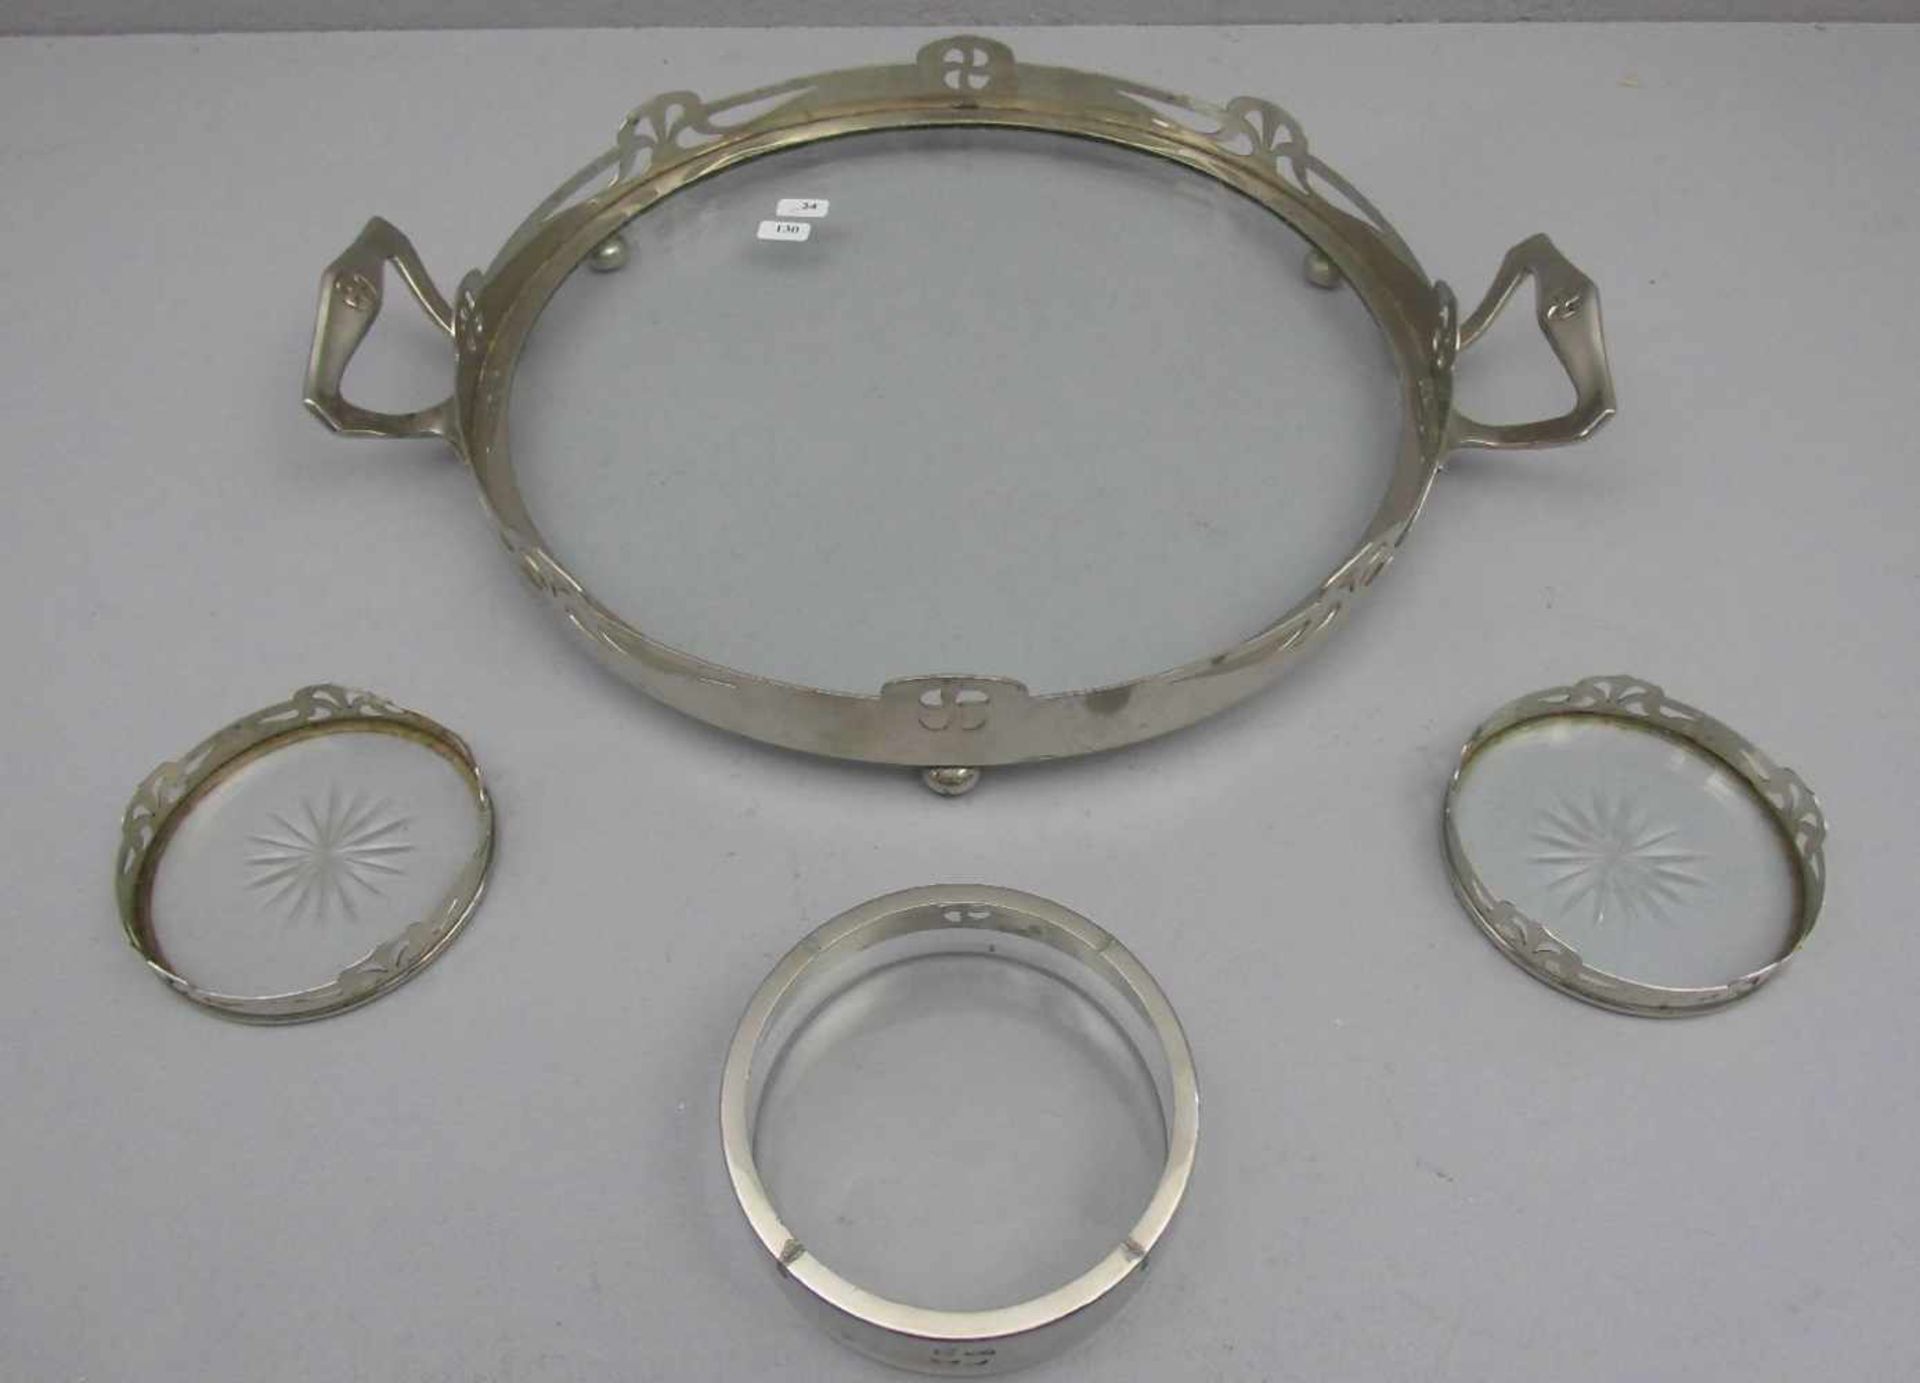 JUGENDSTIL -TABLETT MIT UNTERSETZERN / art nouveau tray and dripmats, verchromtes Metall und Glas. - Image 2 of 3